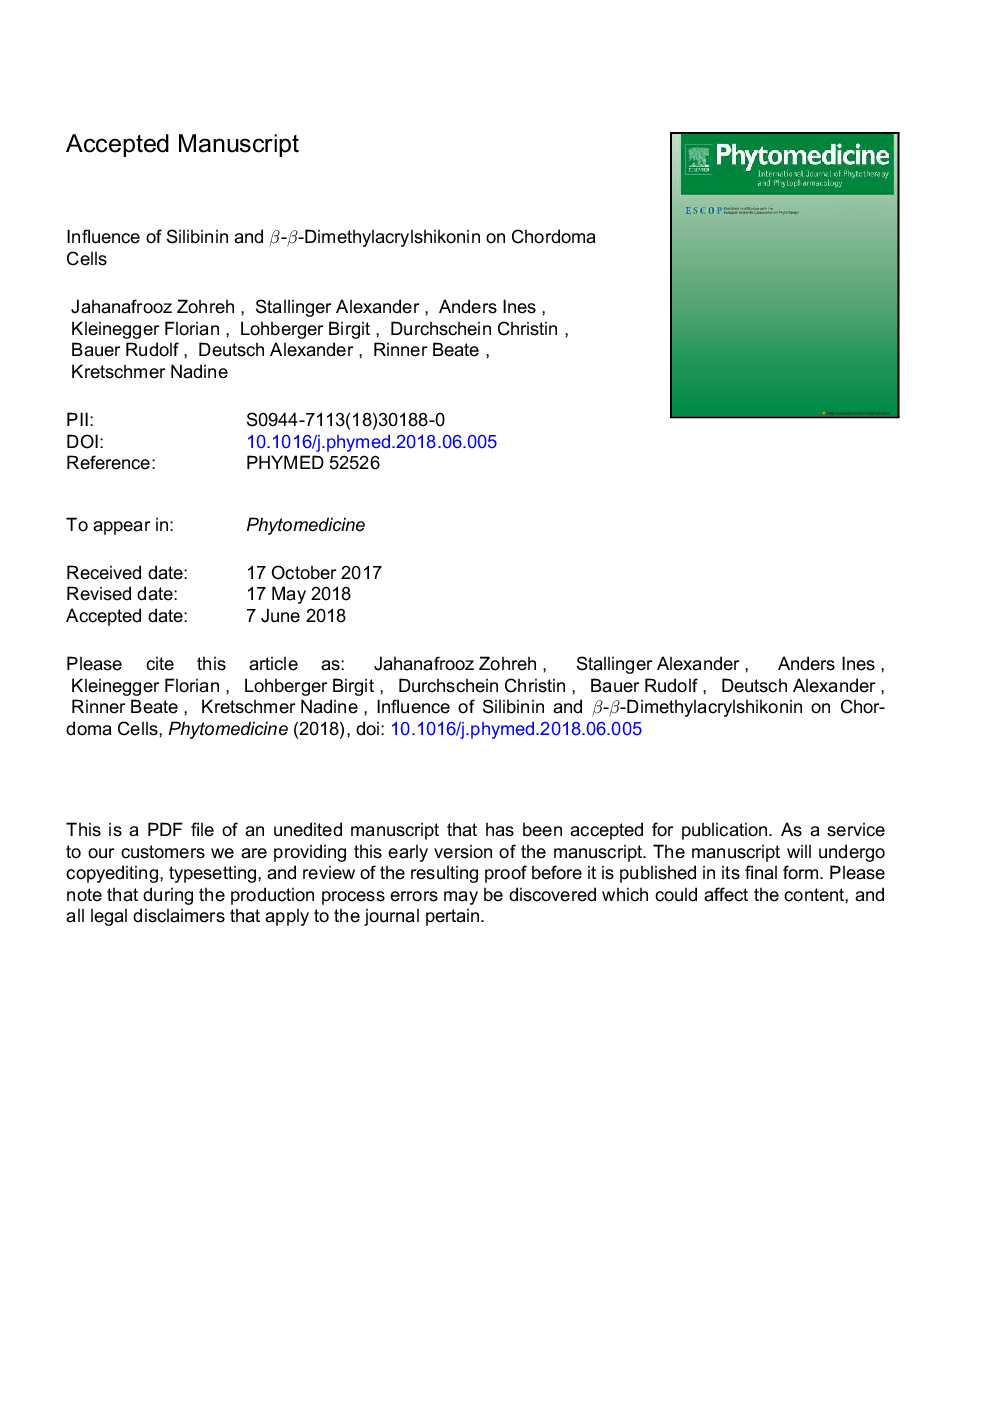 Influence of silibinin and Î²-Î²-dimethylacrylshikonin on chordoma cells